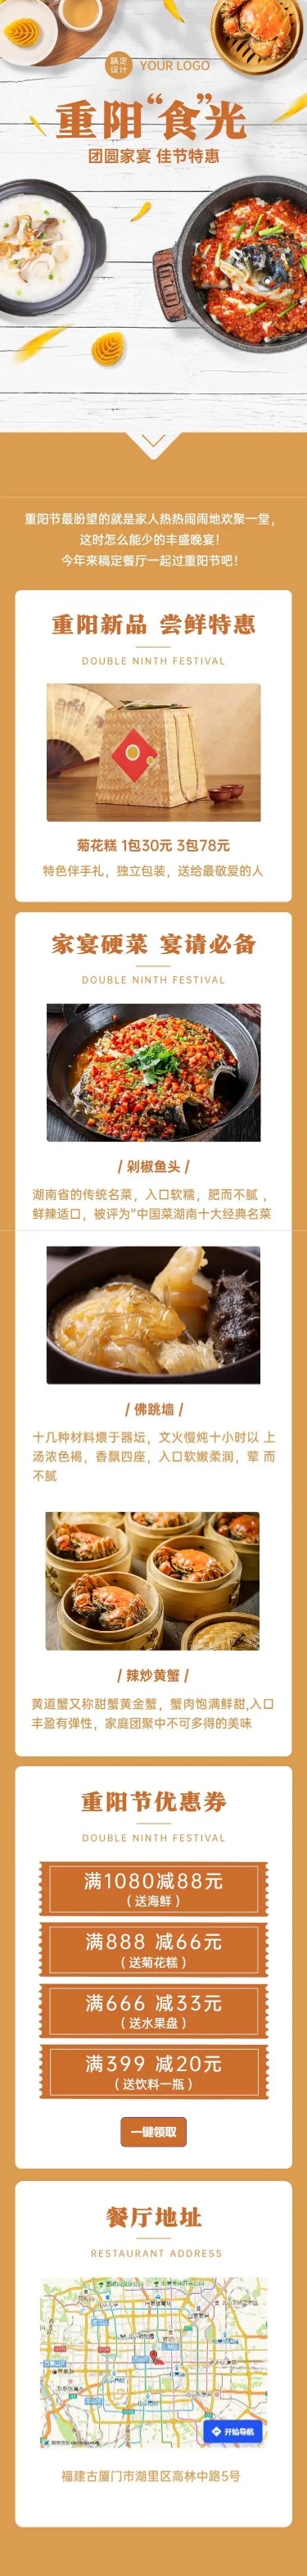 H5长页重阳节团圆家宴菜品宣传